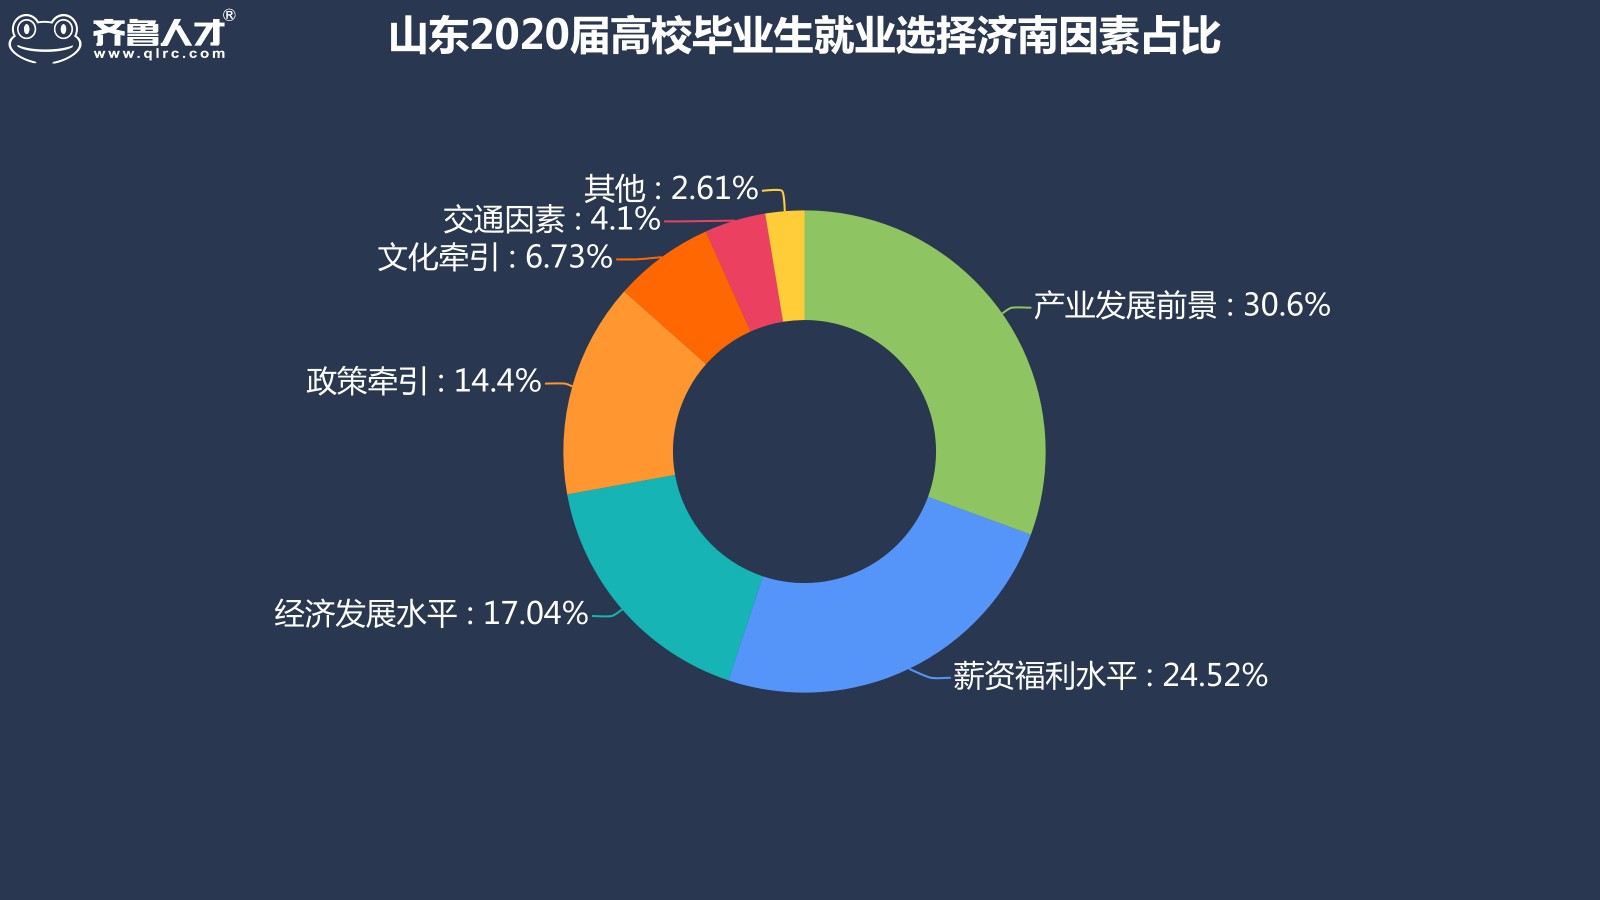 齊魯人才網濟南成為山東2020屆高校畢業生就業地首選，平均薪酬達5986元圖2.jpg